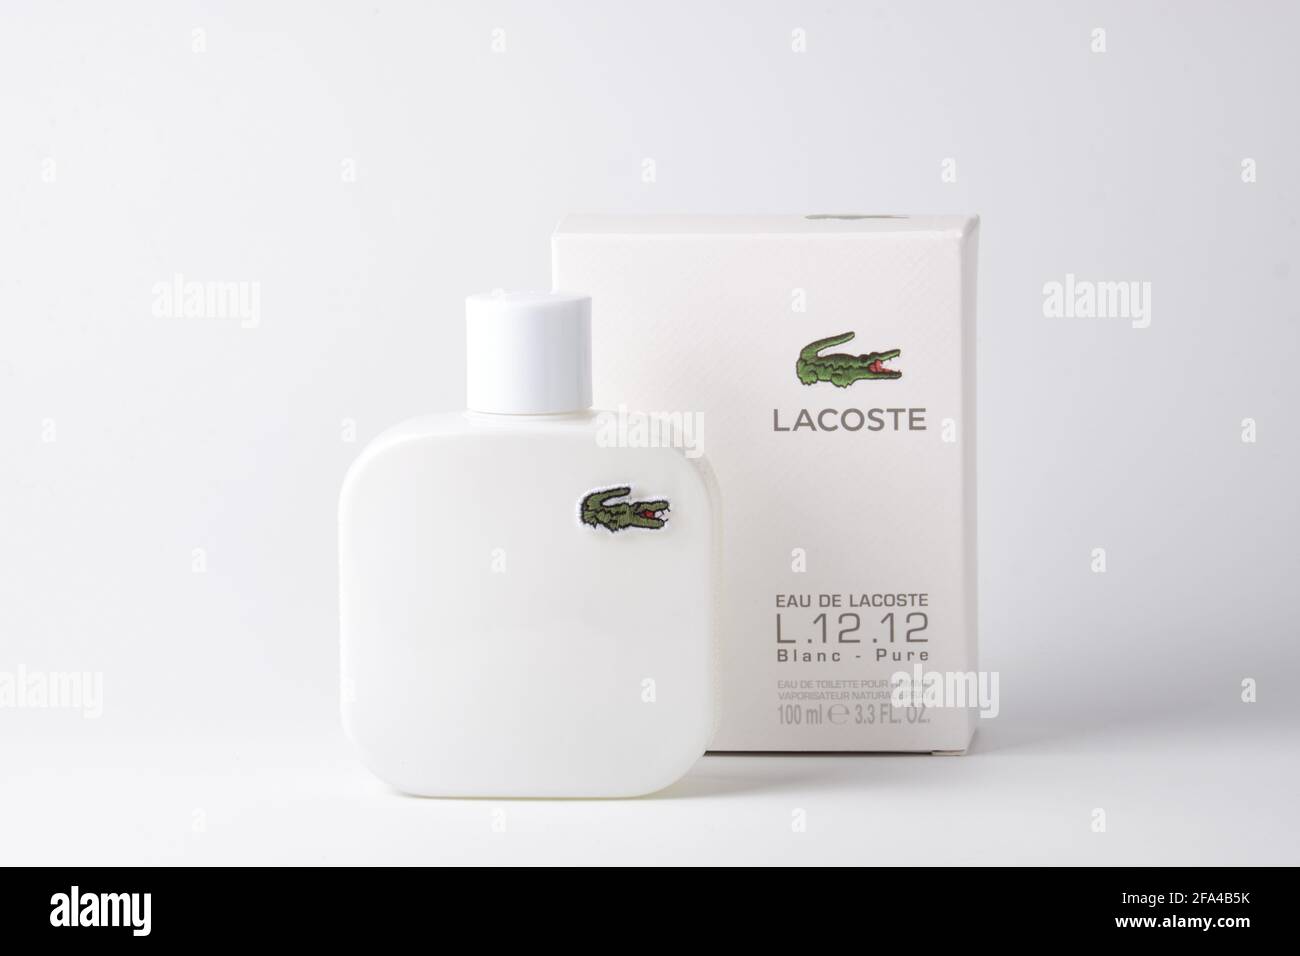 Lacoste Eau De Lacoste L.12.12 Blanc against white background Stock Photo -  Alamy